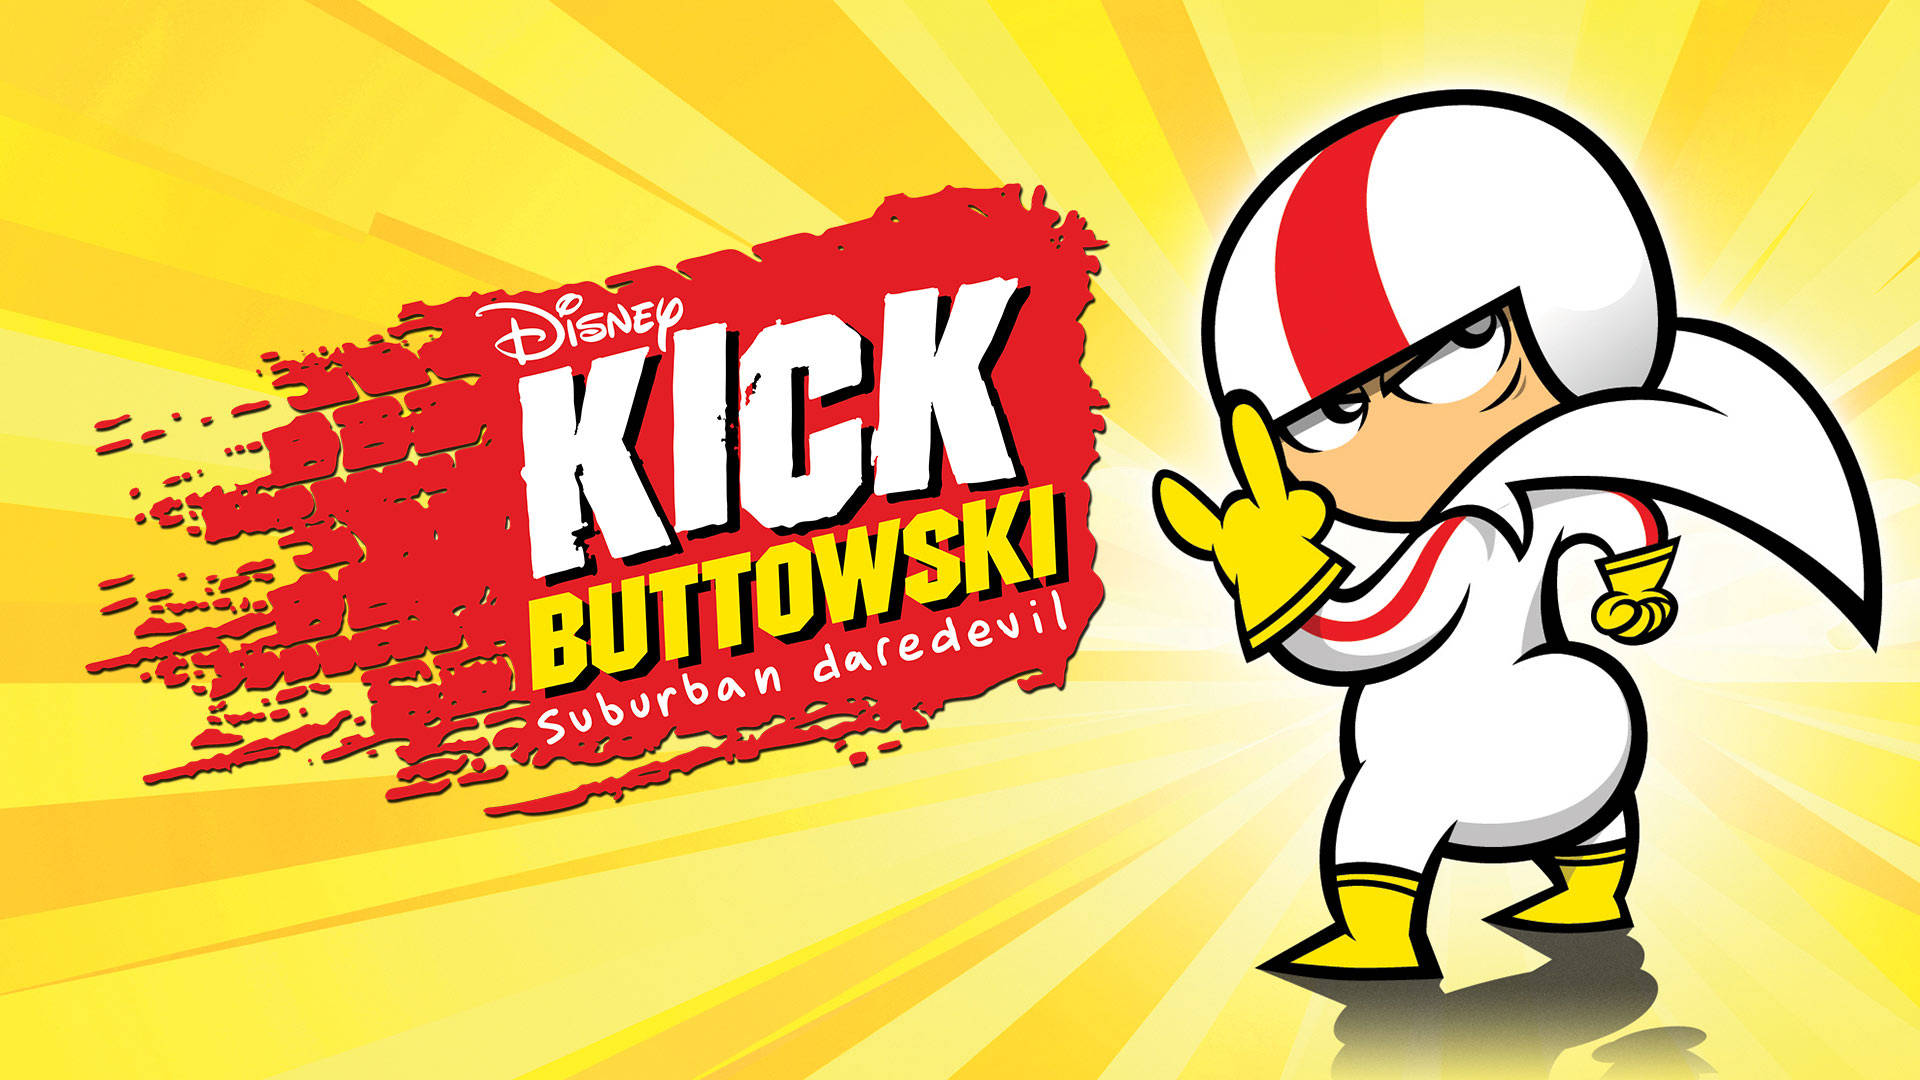 Download Disney Xd Kick Buttowski Wallpaper 